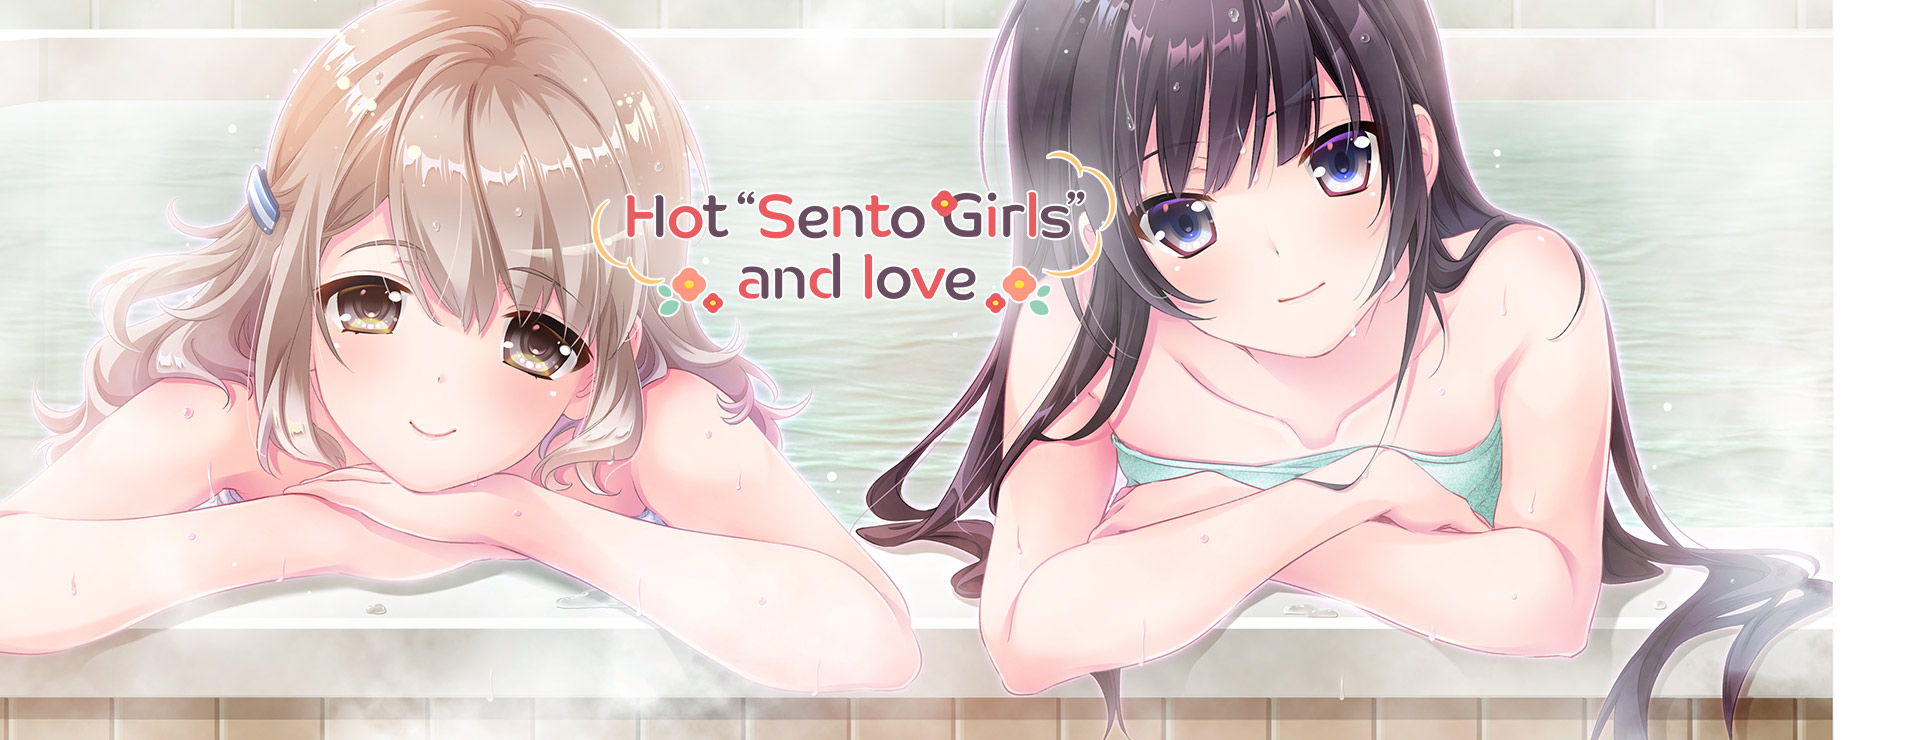 Hot "Sento Girls" and Love - Japanisches Adventure Spiel